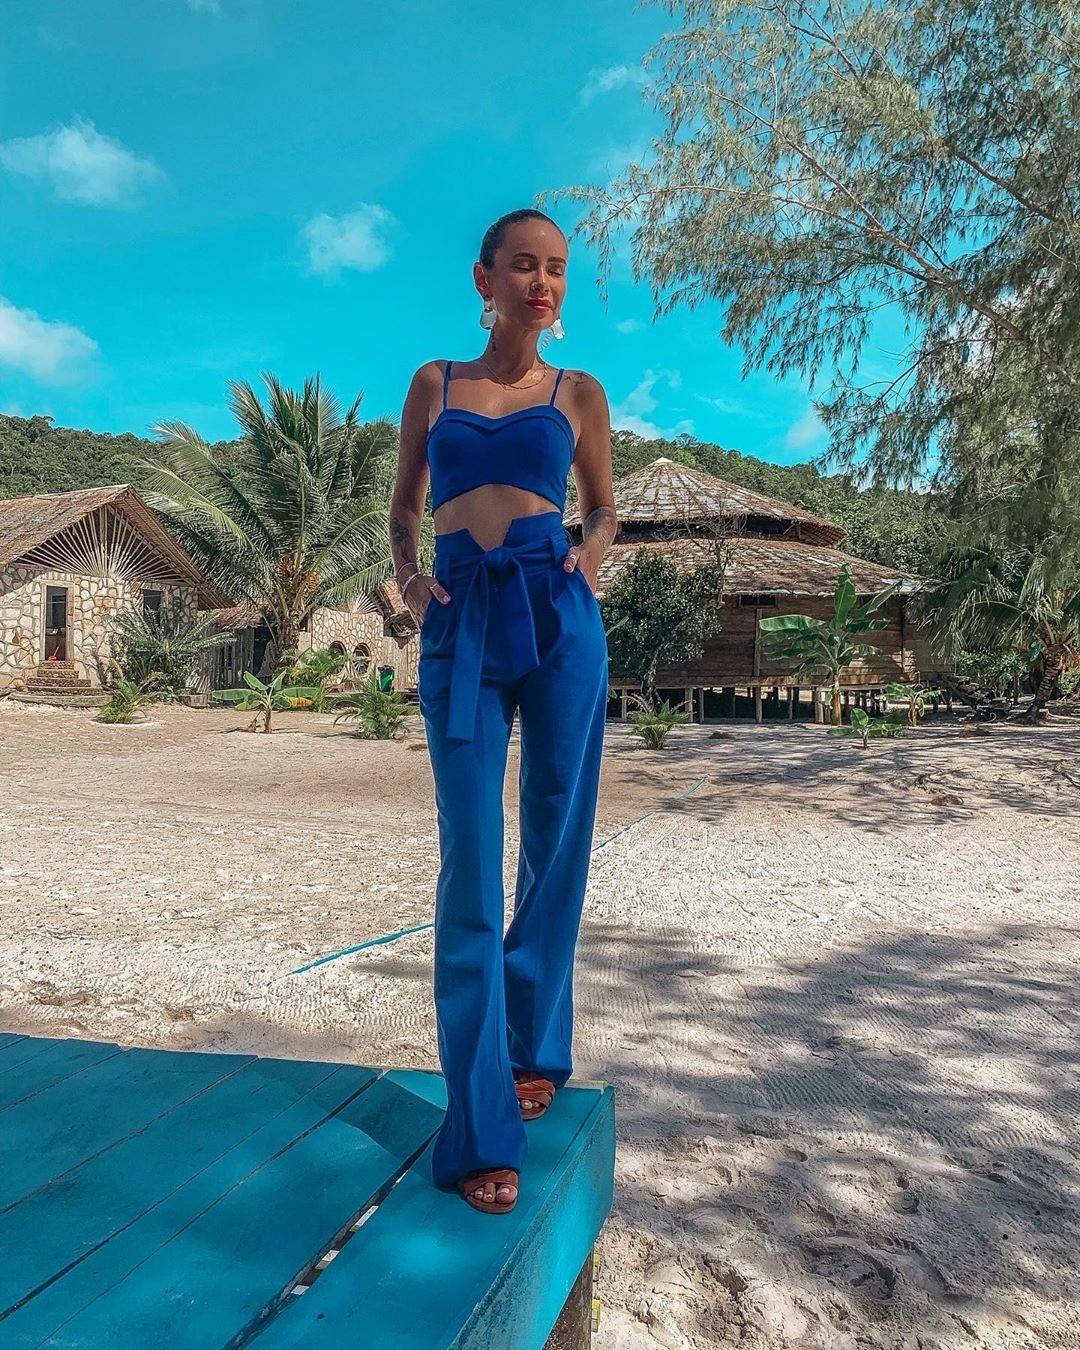 Айза Анохина проводит отпуск в костюме из укороченного топа и расклешенных брюк насыщенного синего цвета с минимумом макияжа и украшений.